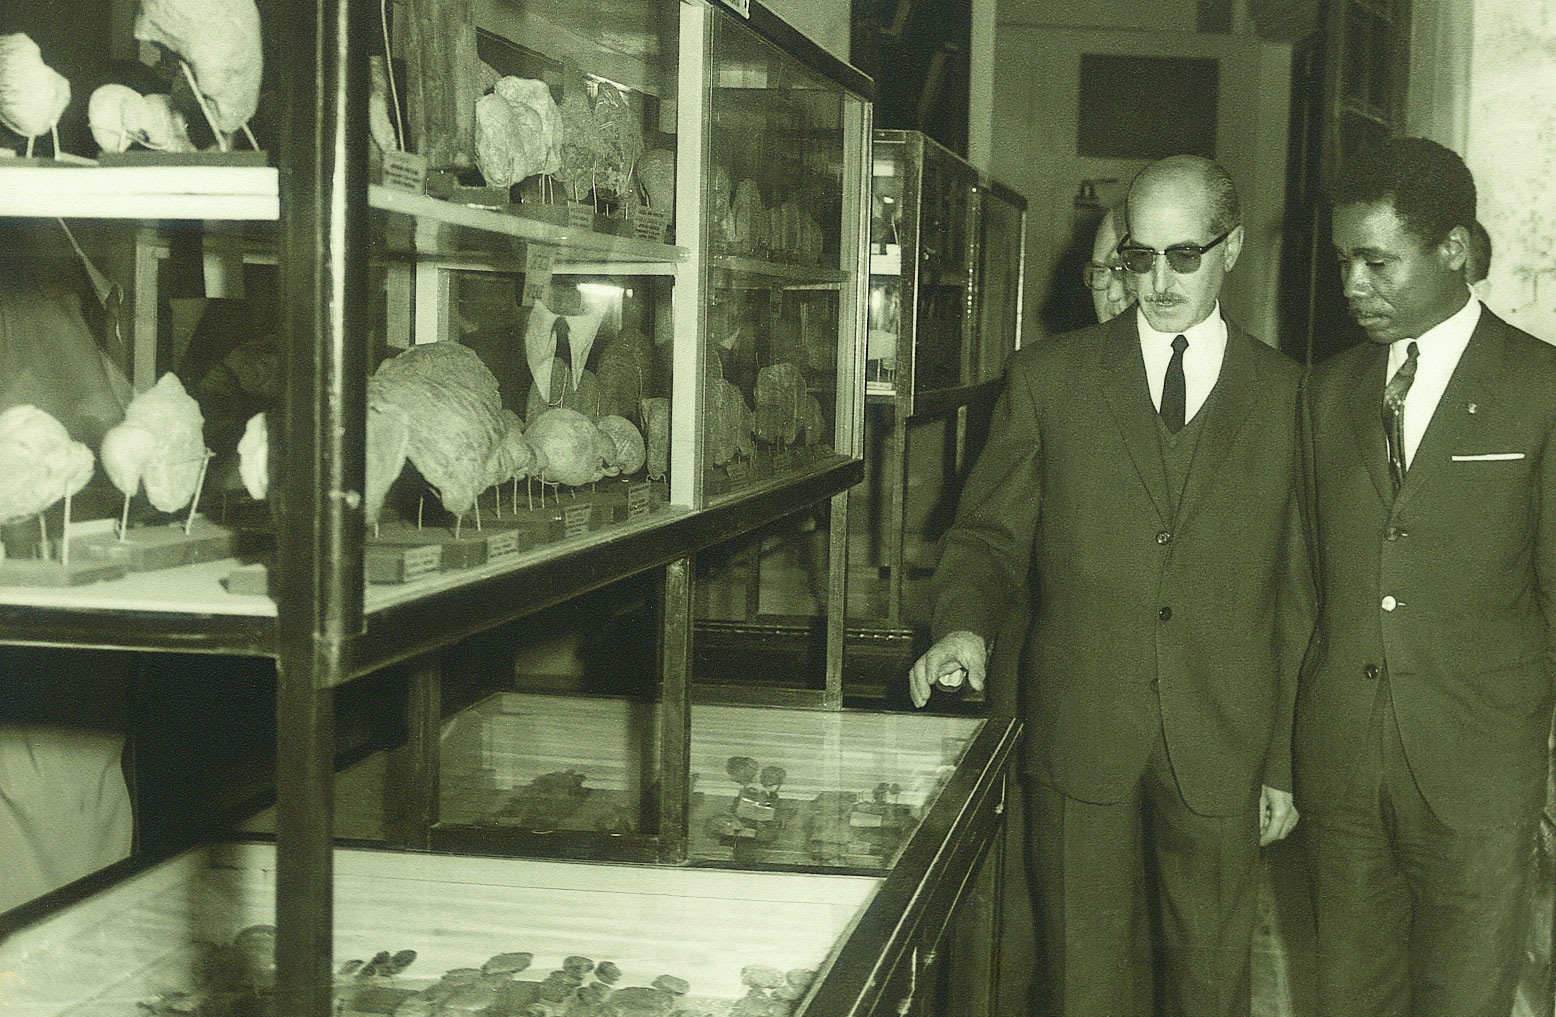 Vicent Pascual, conservador del Museu des de 1958, mostra la col·lecció paleontològica